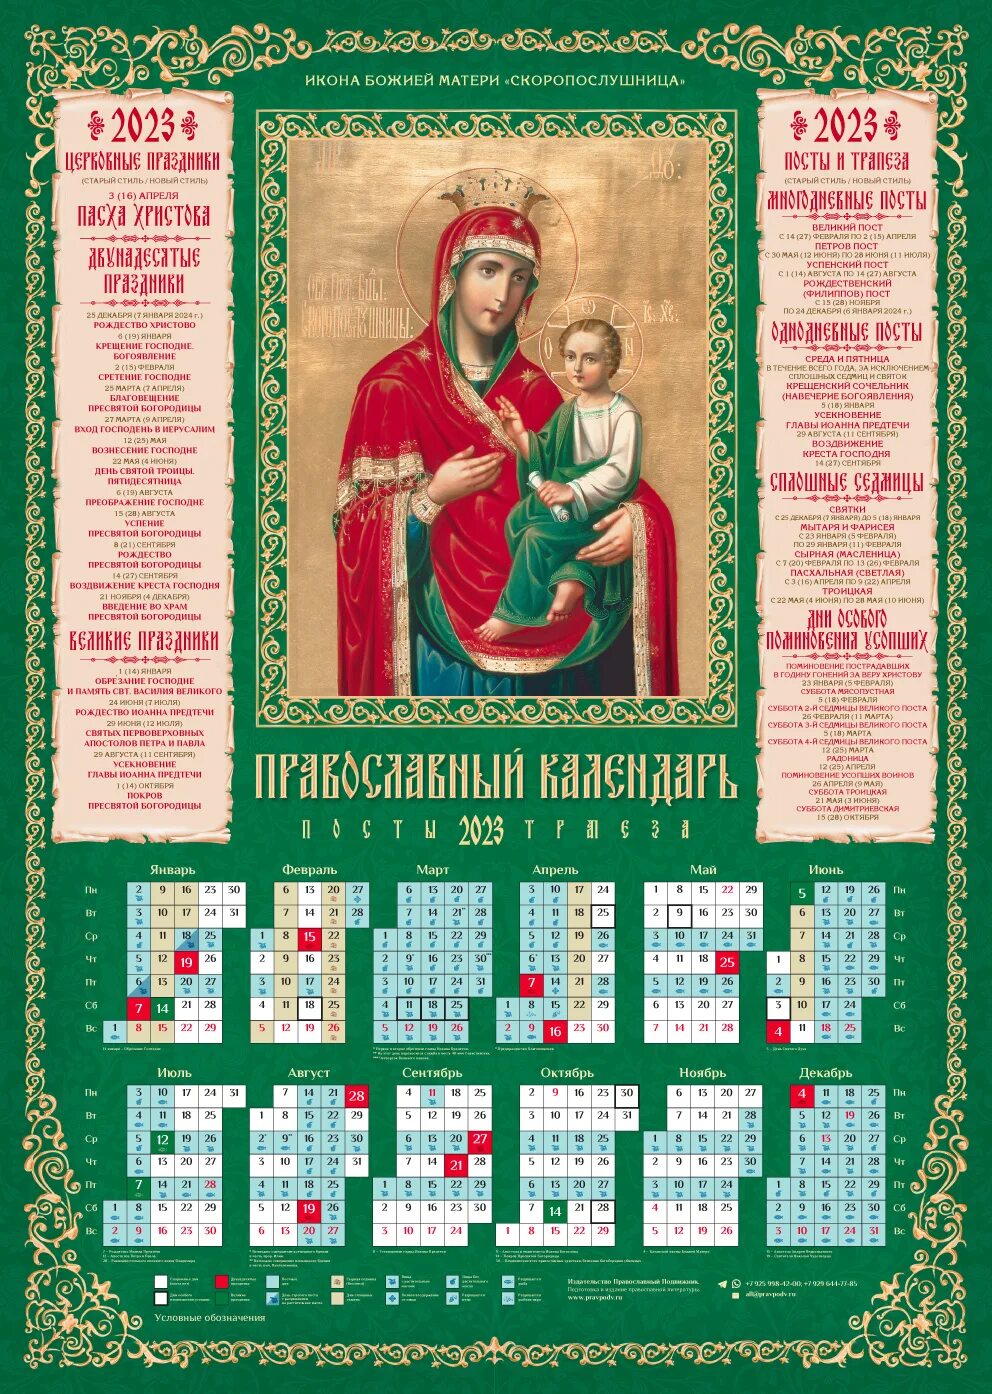 Православный христианский календарь. Календарь на 2023 православный на 2023г. Православный календарь на 2023 год. Календарь на 2023 годпровославный. Православный календарь на 2023 год с праздниками.